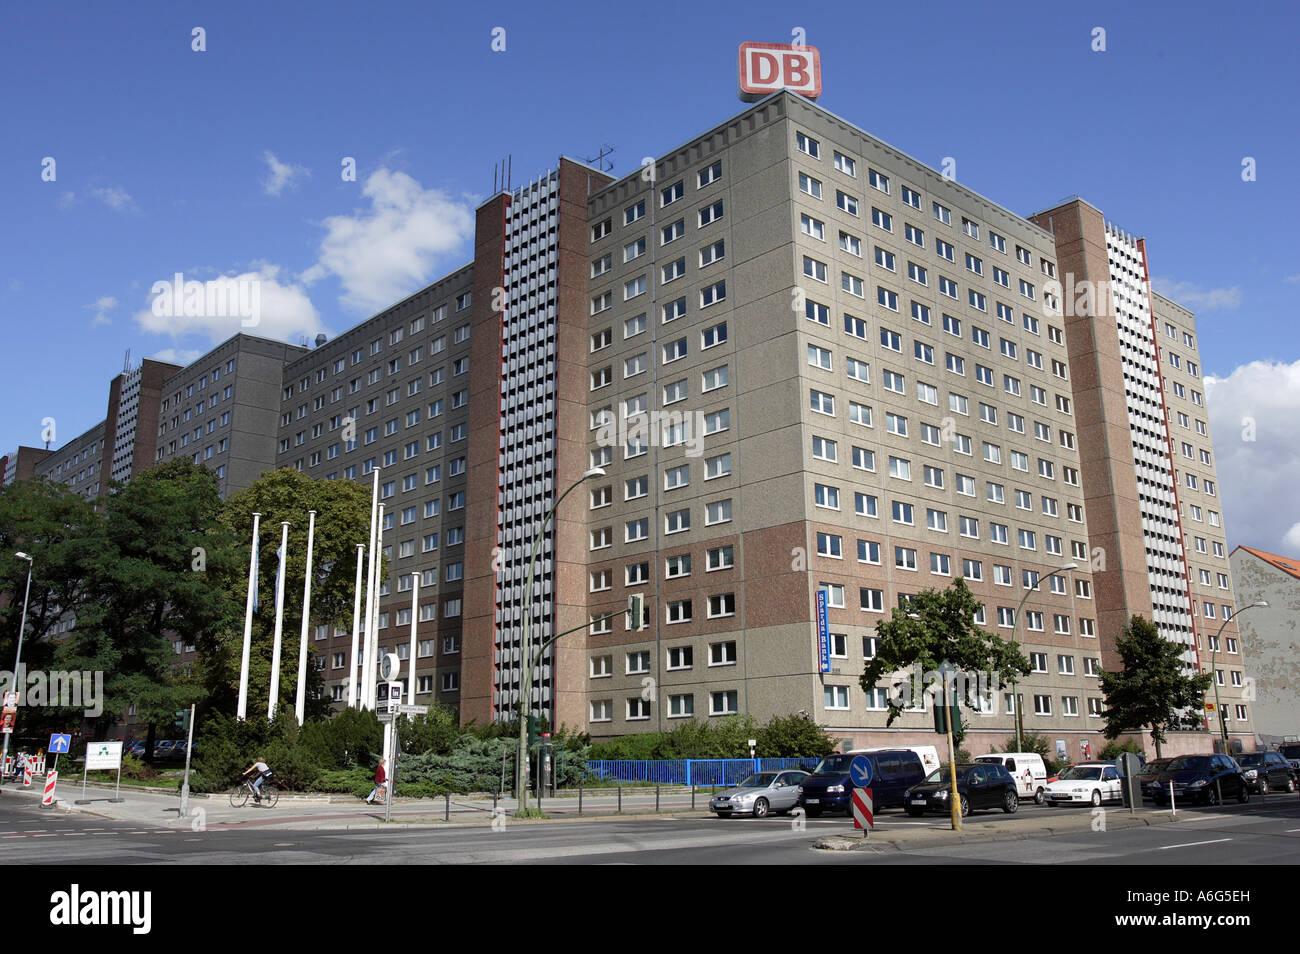 La Compagnie des chemins de fer allemands (DB) place d'affaires à l'intérieur du bâtiment de l'ancienne Stasi est-allemande à Berlin à Normannenstrasse Banque D'Images